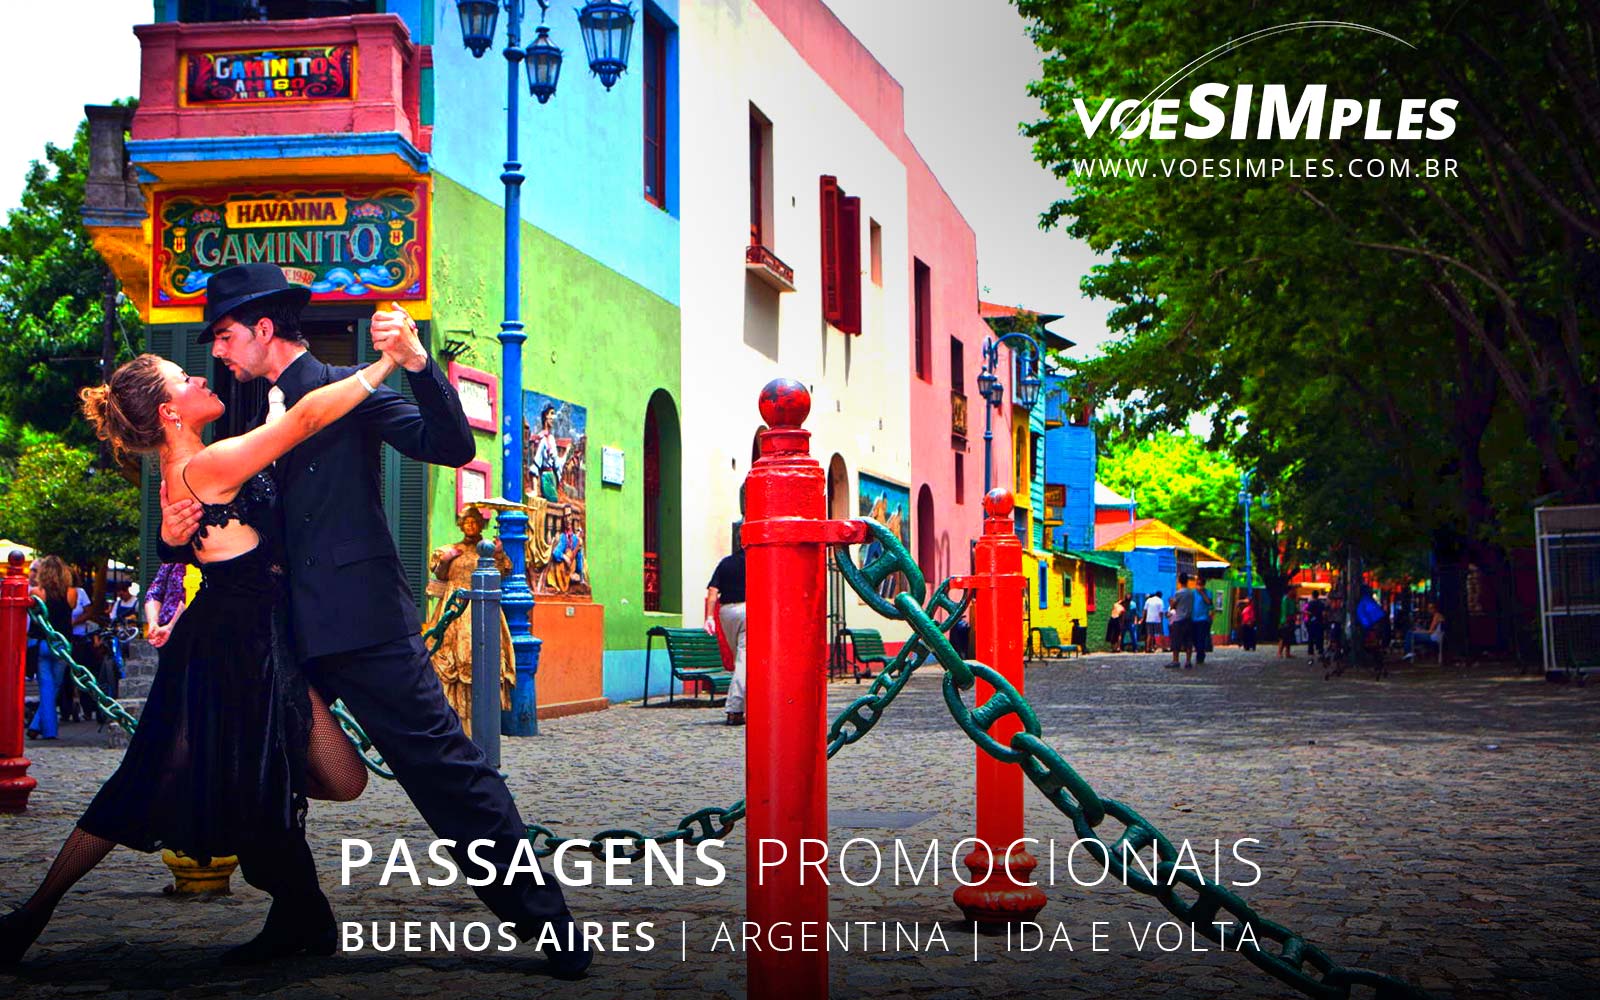 passagens-aereas-baratas-buenos-aires-argentina-america-latina-voe-simples-passages-aereas-promocionais-argentina-passagens-promo-buenos-aires